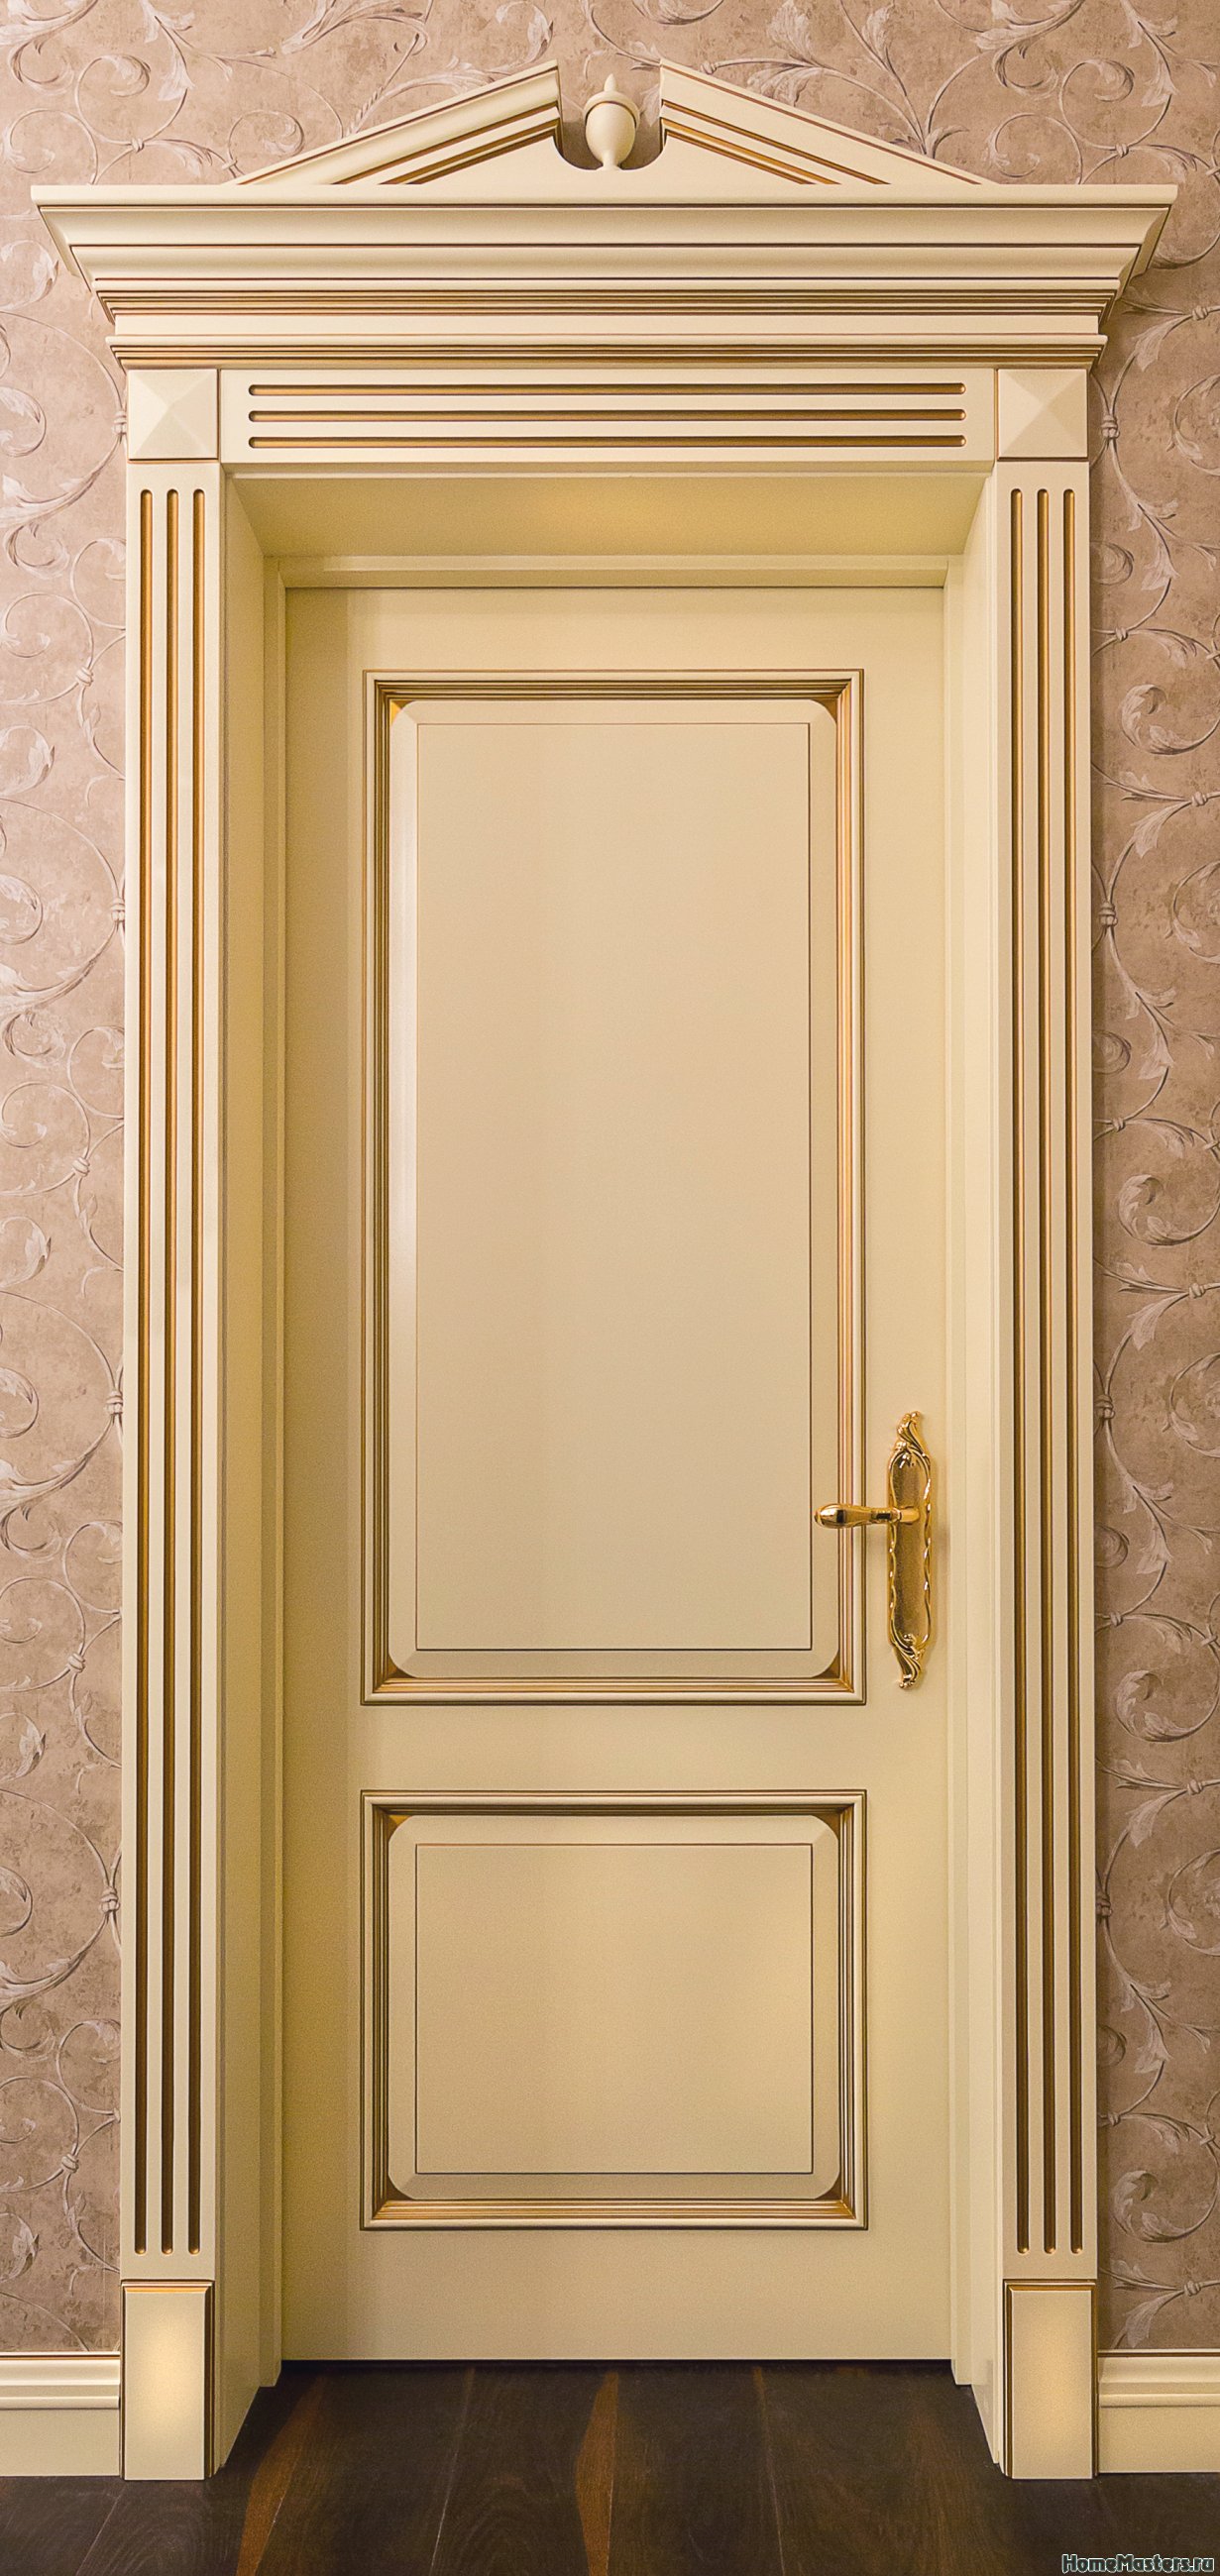 Фото элитной межкомнатной двери Альберт с наличниками и сандриком